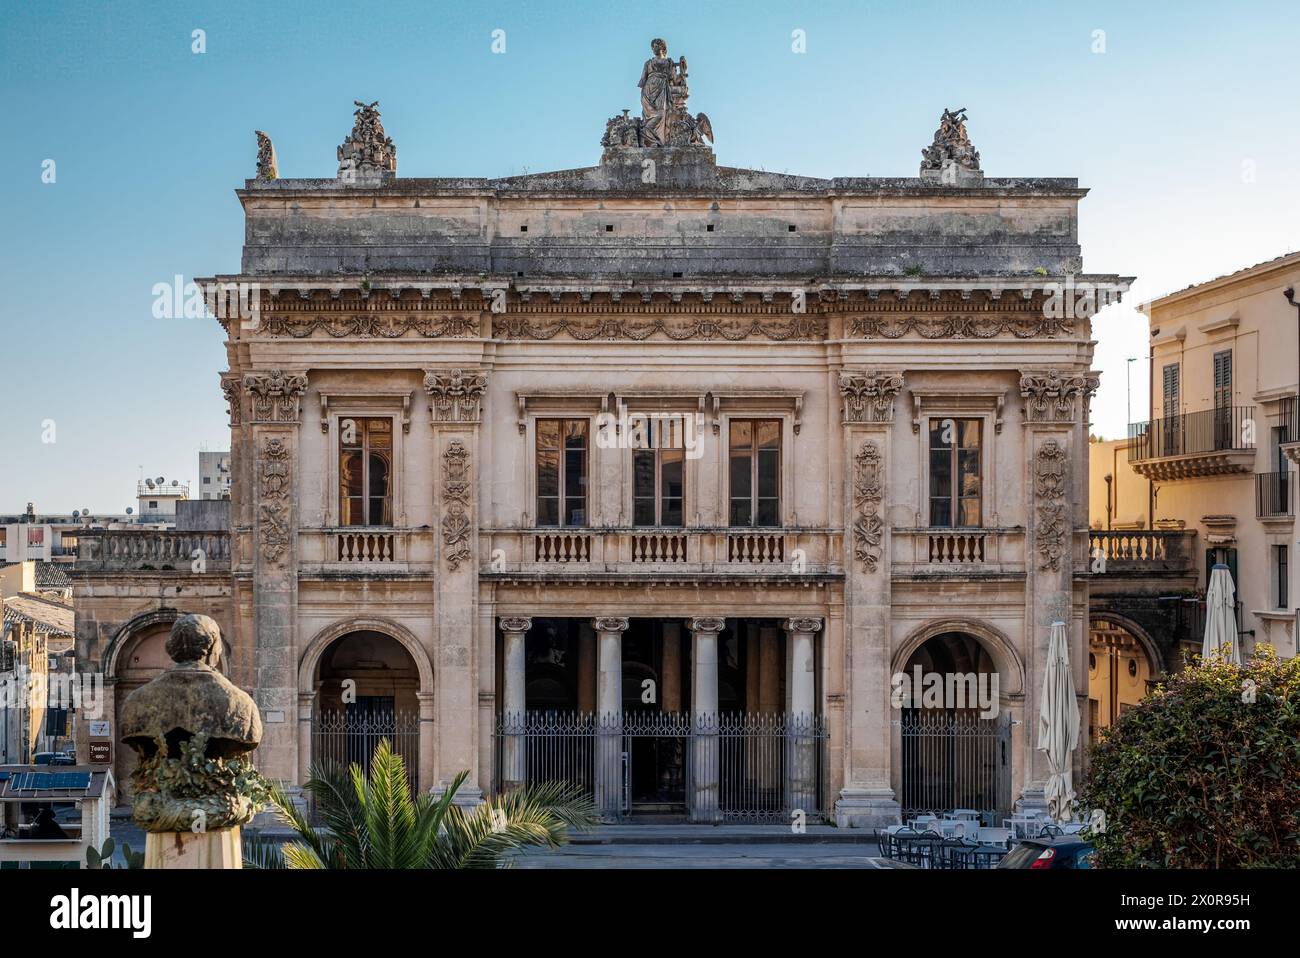 Le théâtre de style néoclassique de la ville baroque de Noto, province de Syracuse, Sicile, Italie Banque D'Images